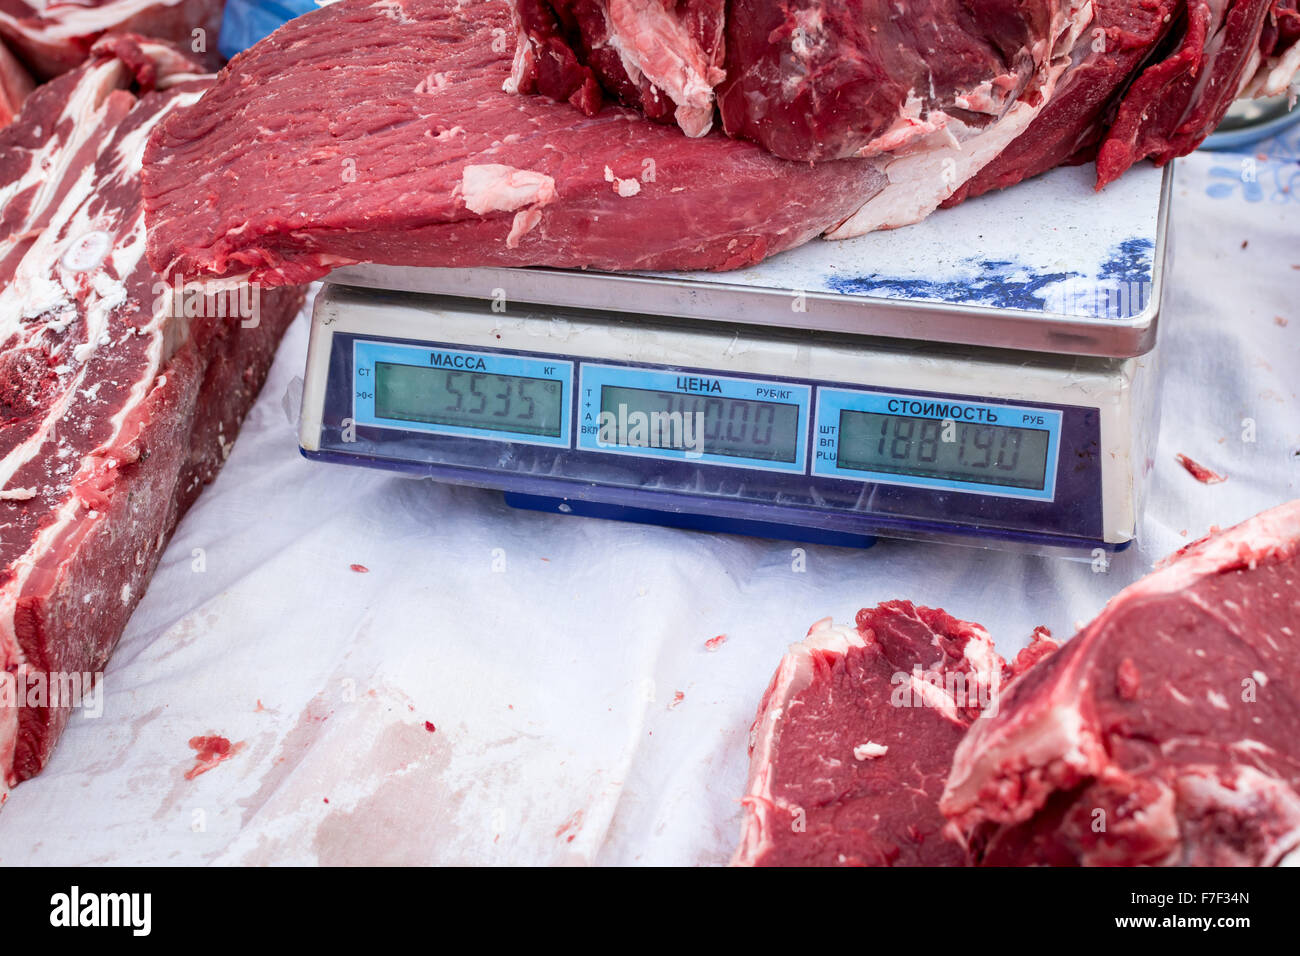 Stücke von frischem Rindfleisch Rest auf eine Markt-Waage zeigt das Gewicht und Preis in russischer Sprache Stockfoto